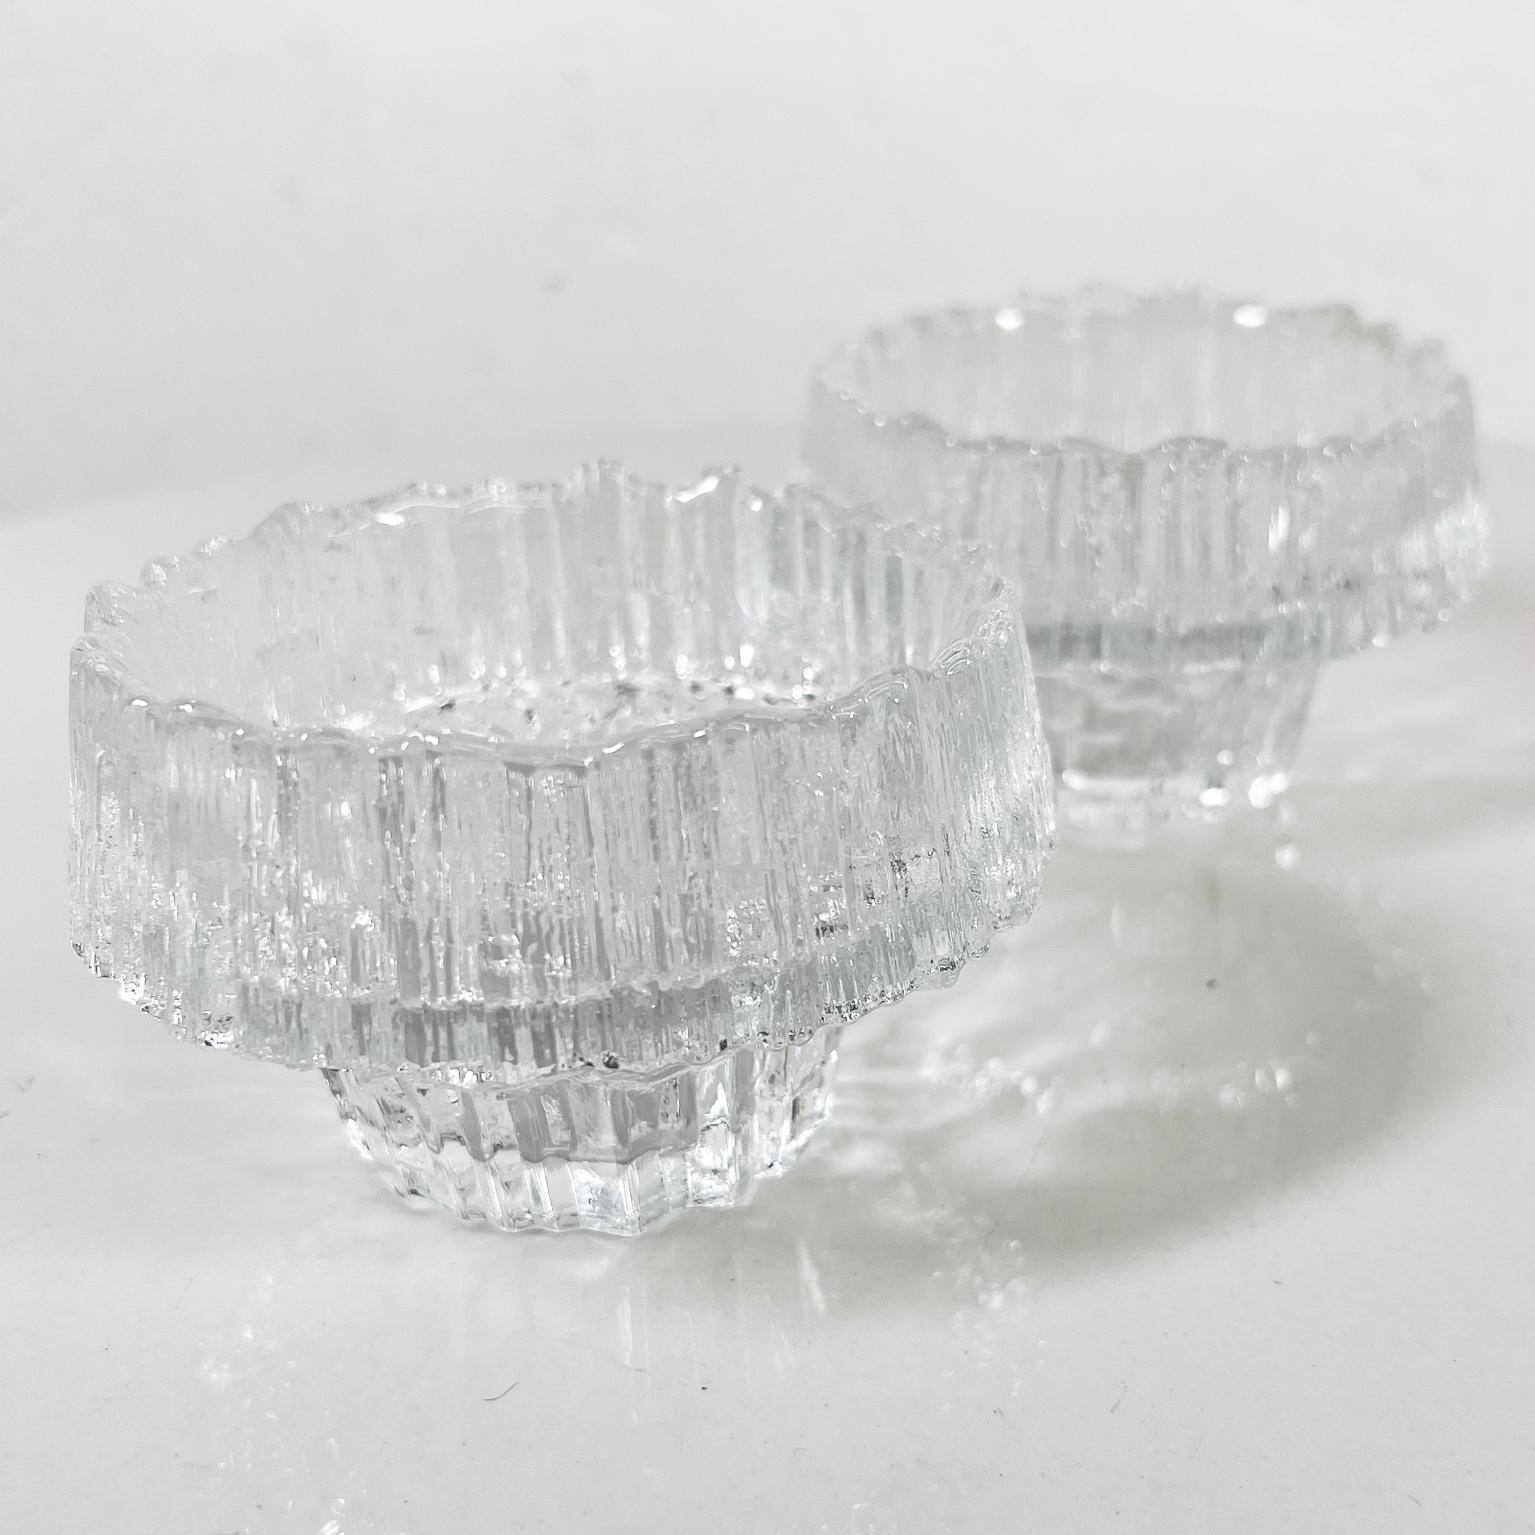 1970er Iittala Stellaria Votivkerzenhalter aus Kunstglas von Tapio Wirkkala Finnland
Eiszapfen-Kunstglas aus Kristall
Verkaufen als ein Paar
4,25 Durchmesser x 2,63 h
Gebrauchter Original-Vintage-Zustand.
Sehen Sie sich bitte die Bilder an.